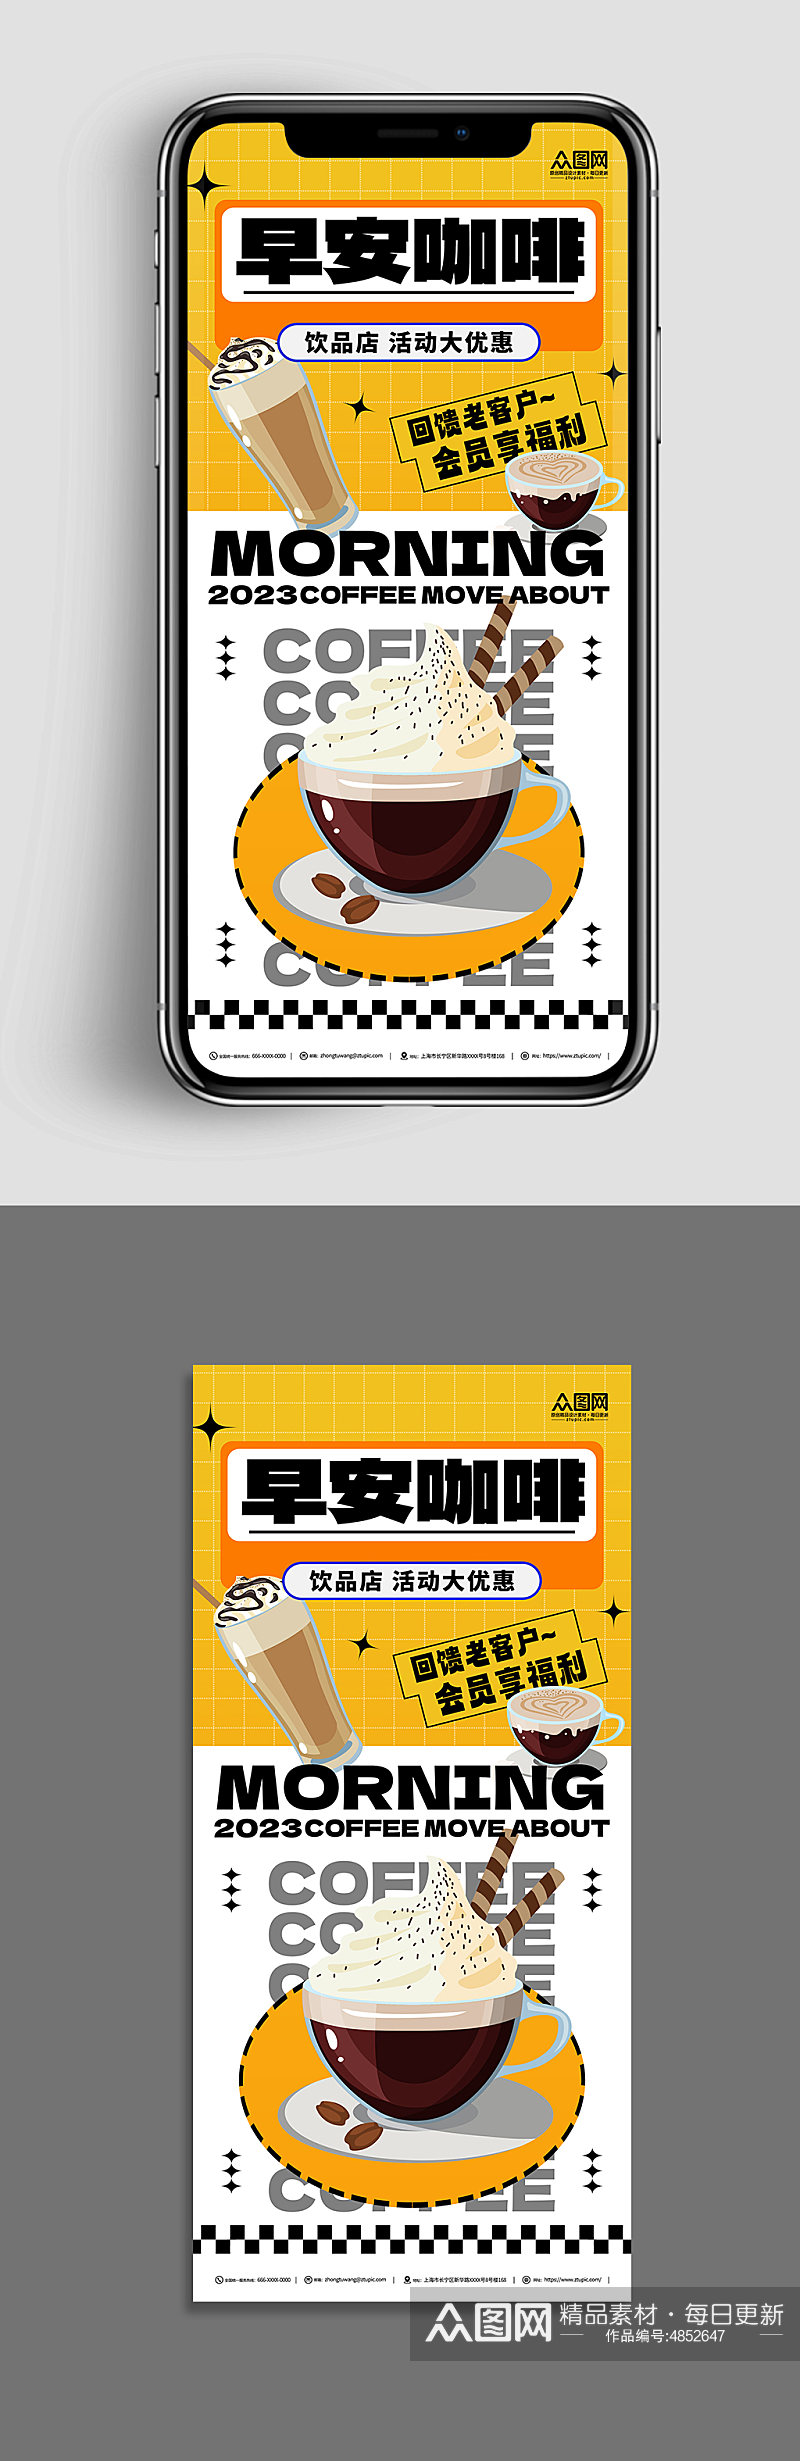 黄色创意潮流拿铁美食咖啡宣传海报素材